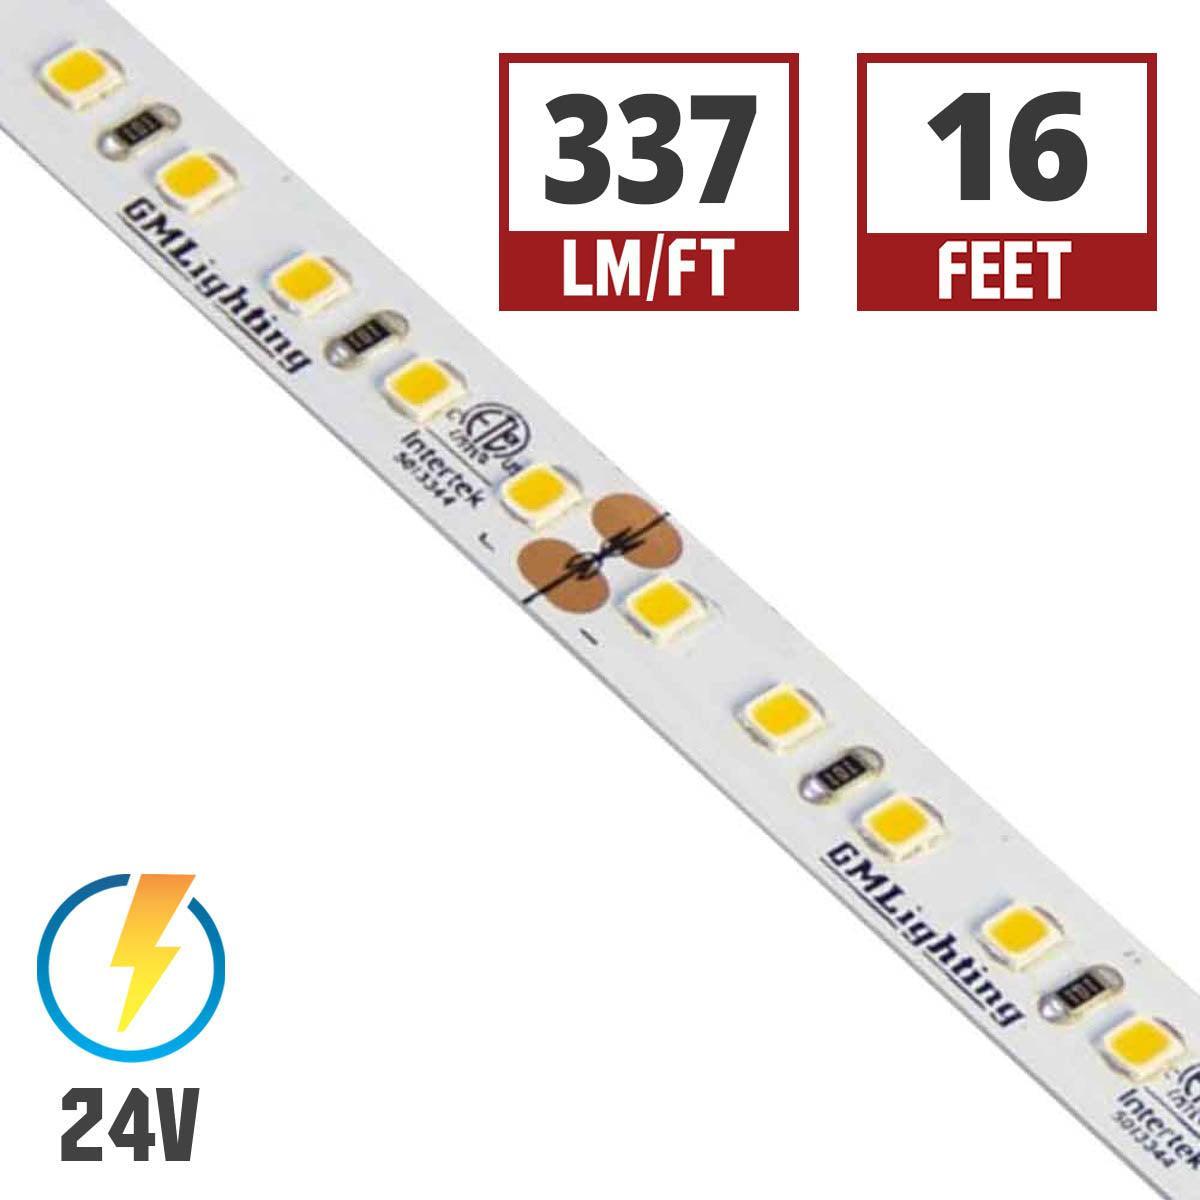 LTR-P Pro LED Strip Light, 4.5 Watts per ft, 370 Lumens per Ft, 24V - Bees Lighting